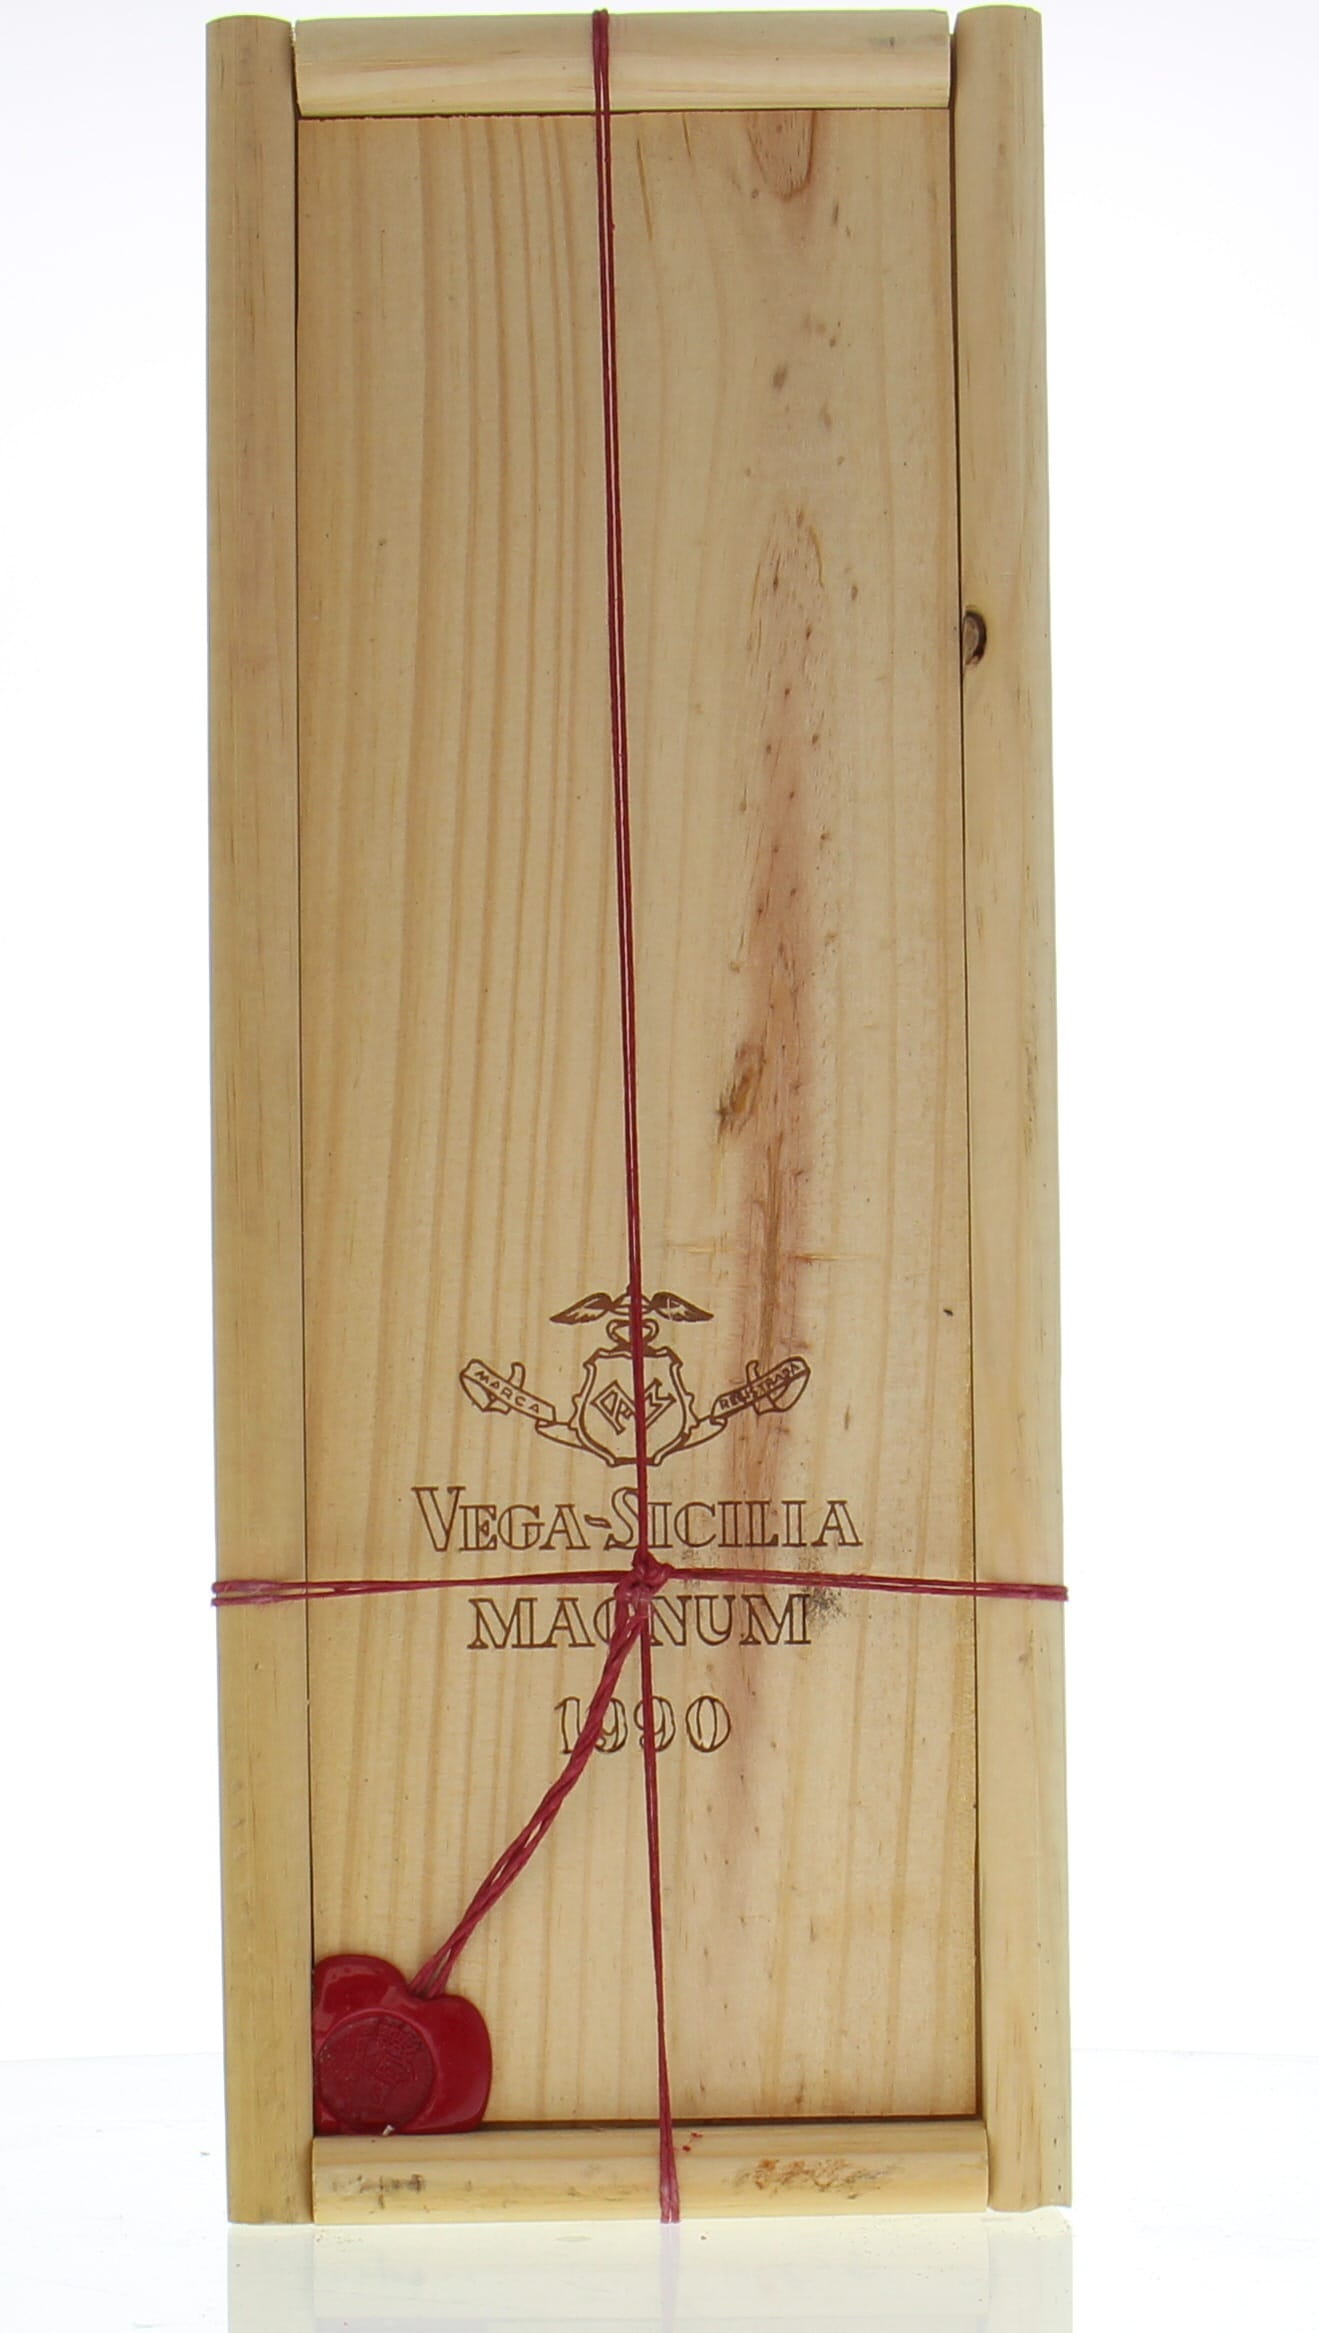 Vega Sicilia - Unico 1990 From Original Wooden Case